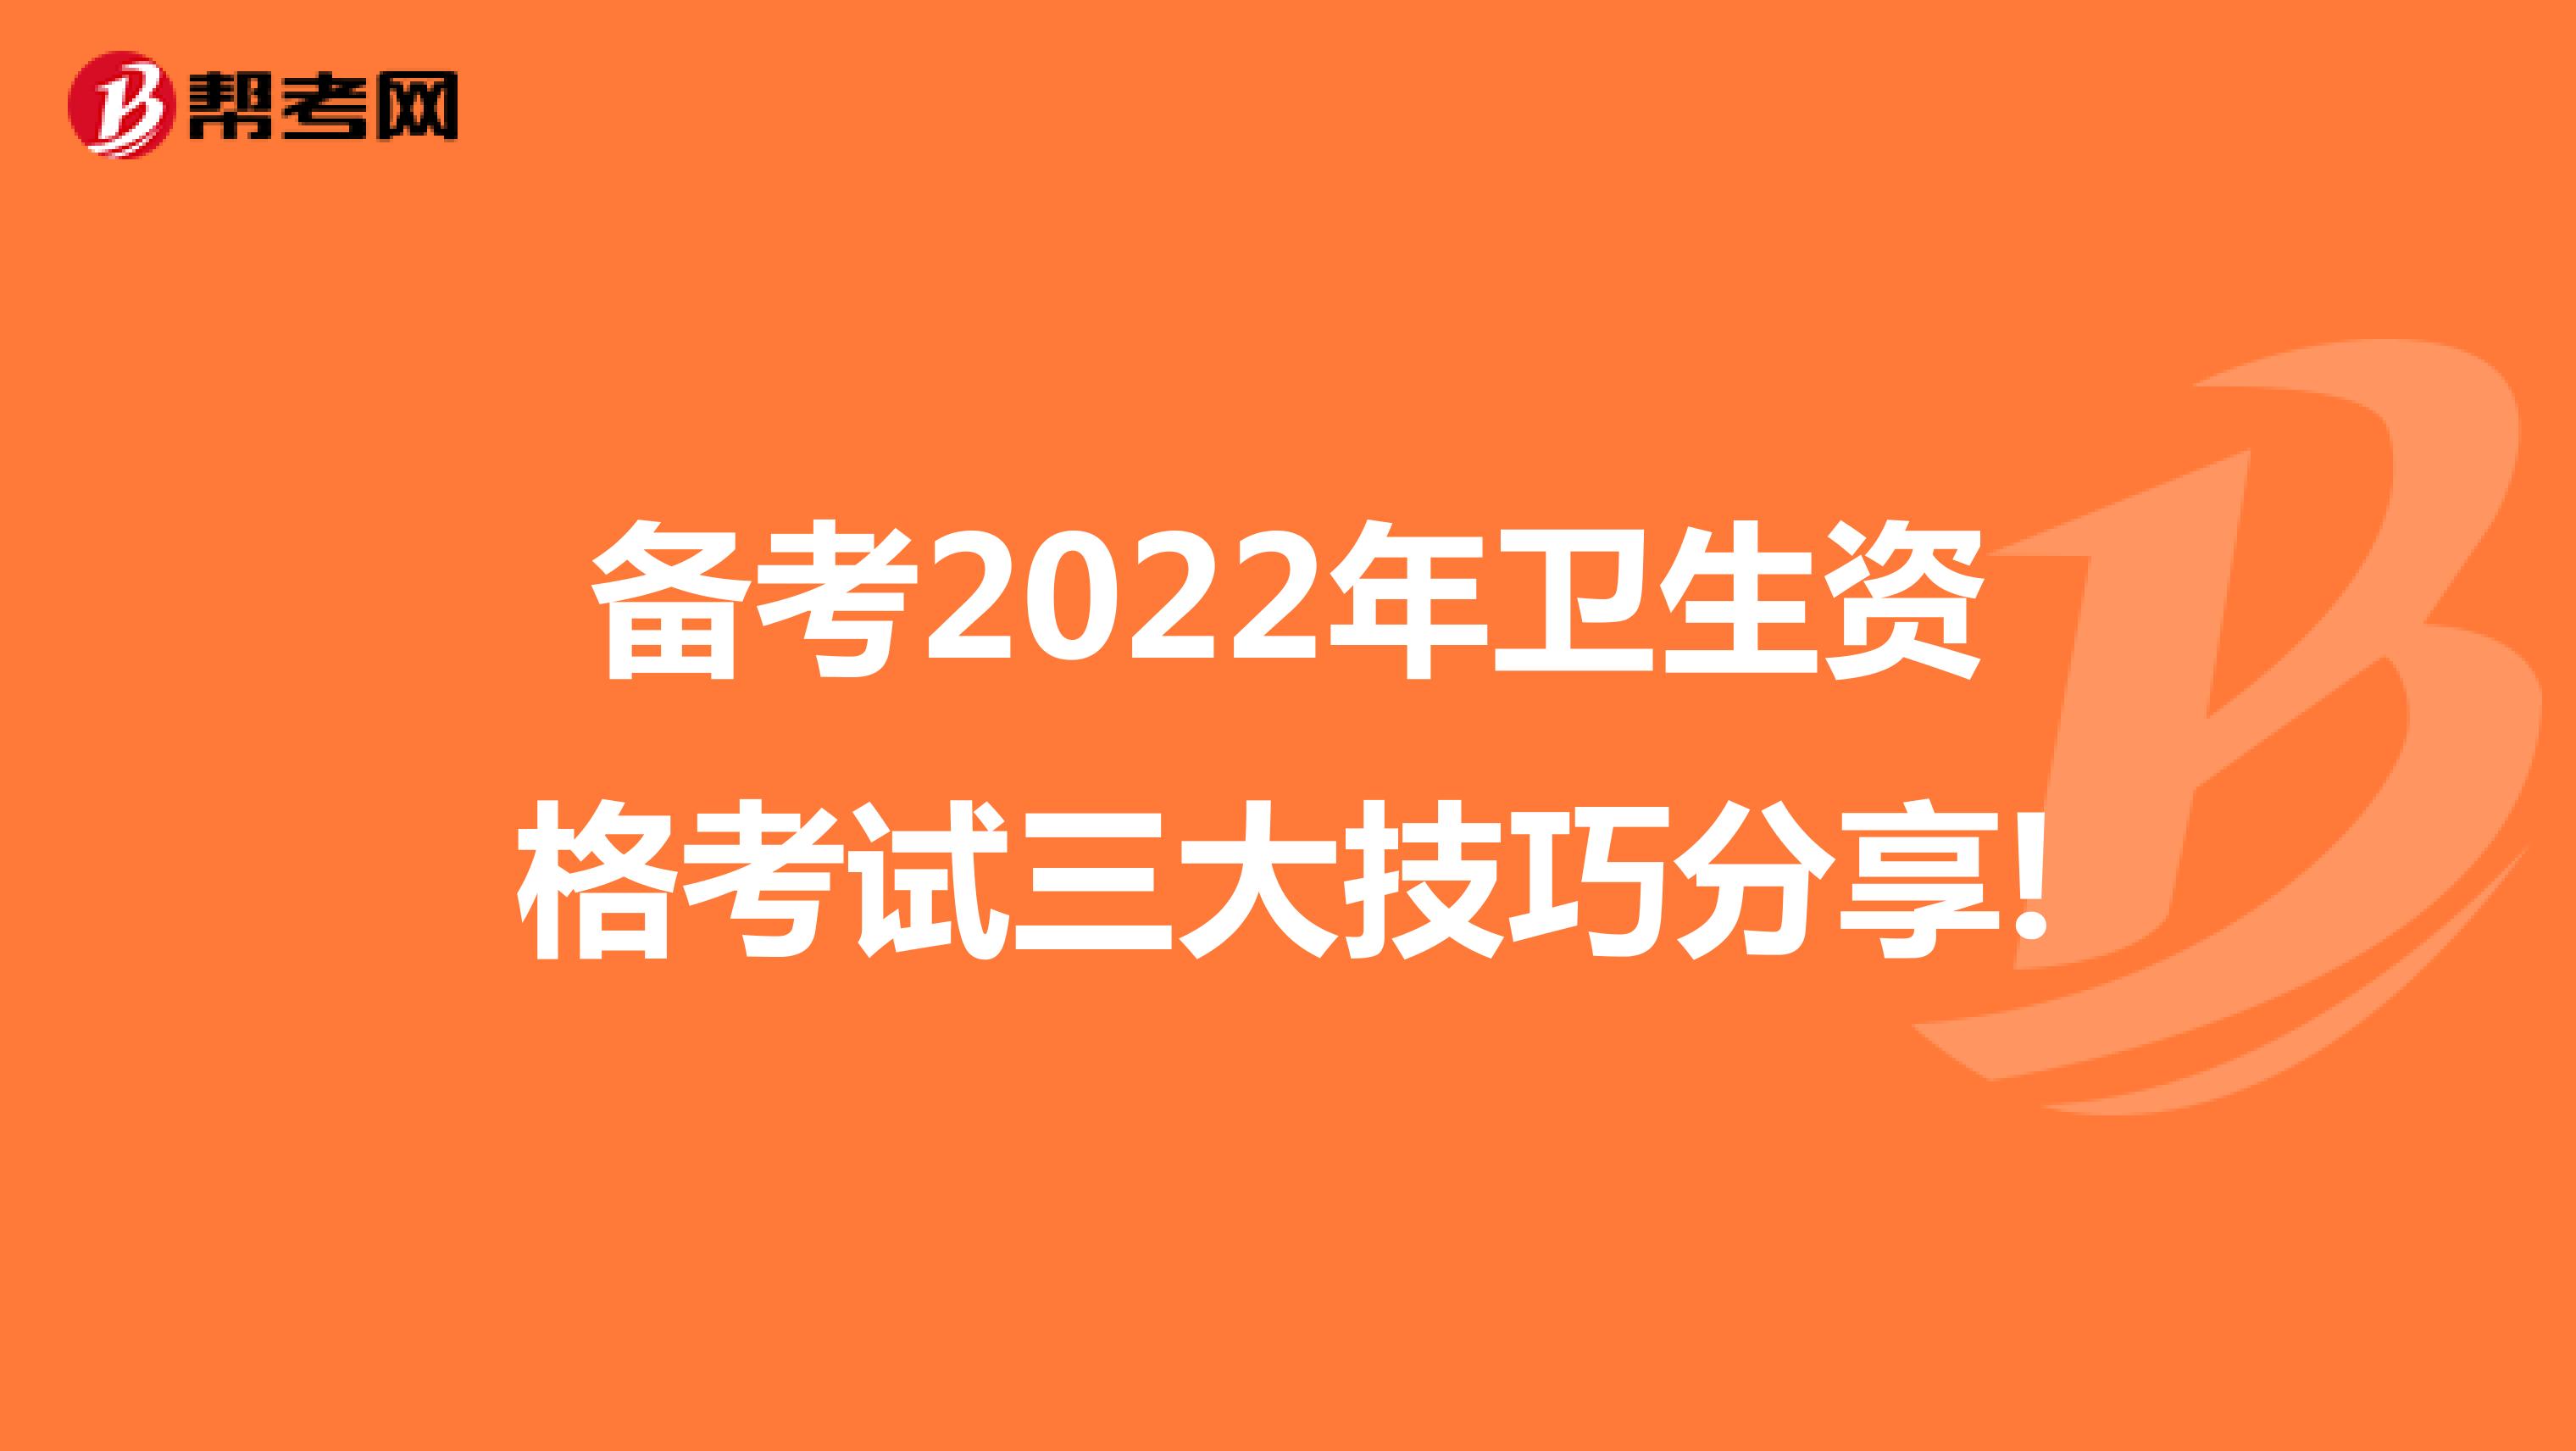 备考2022年卫生资格考试三大技巧分享!